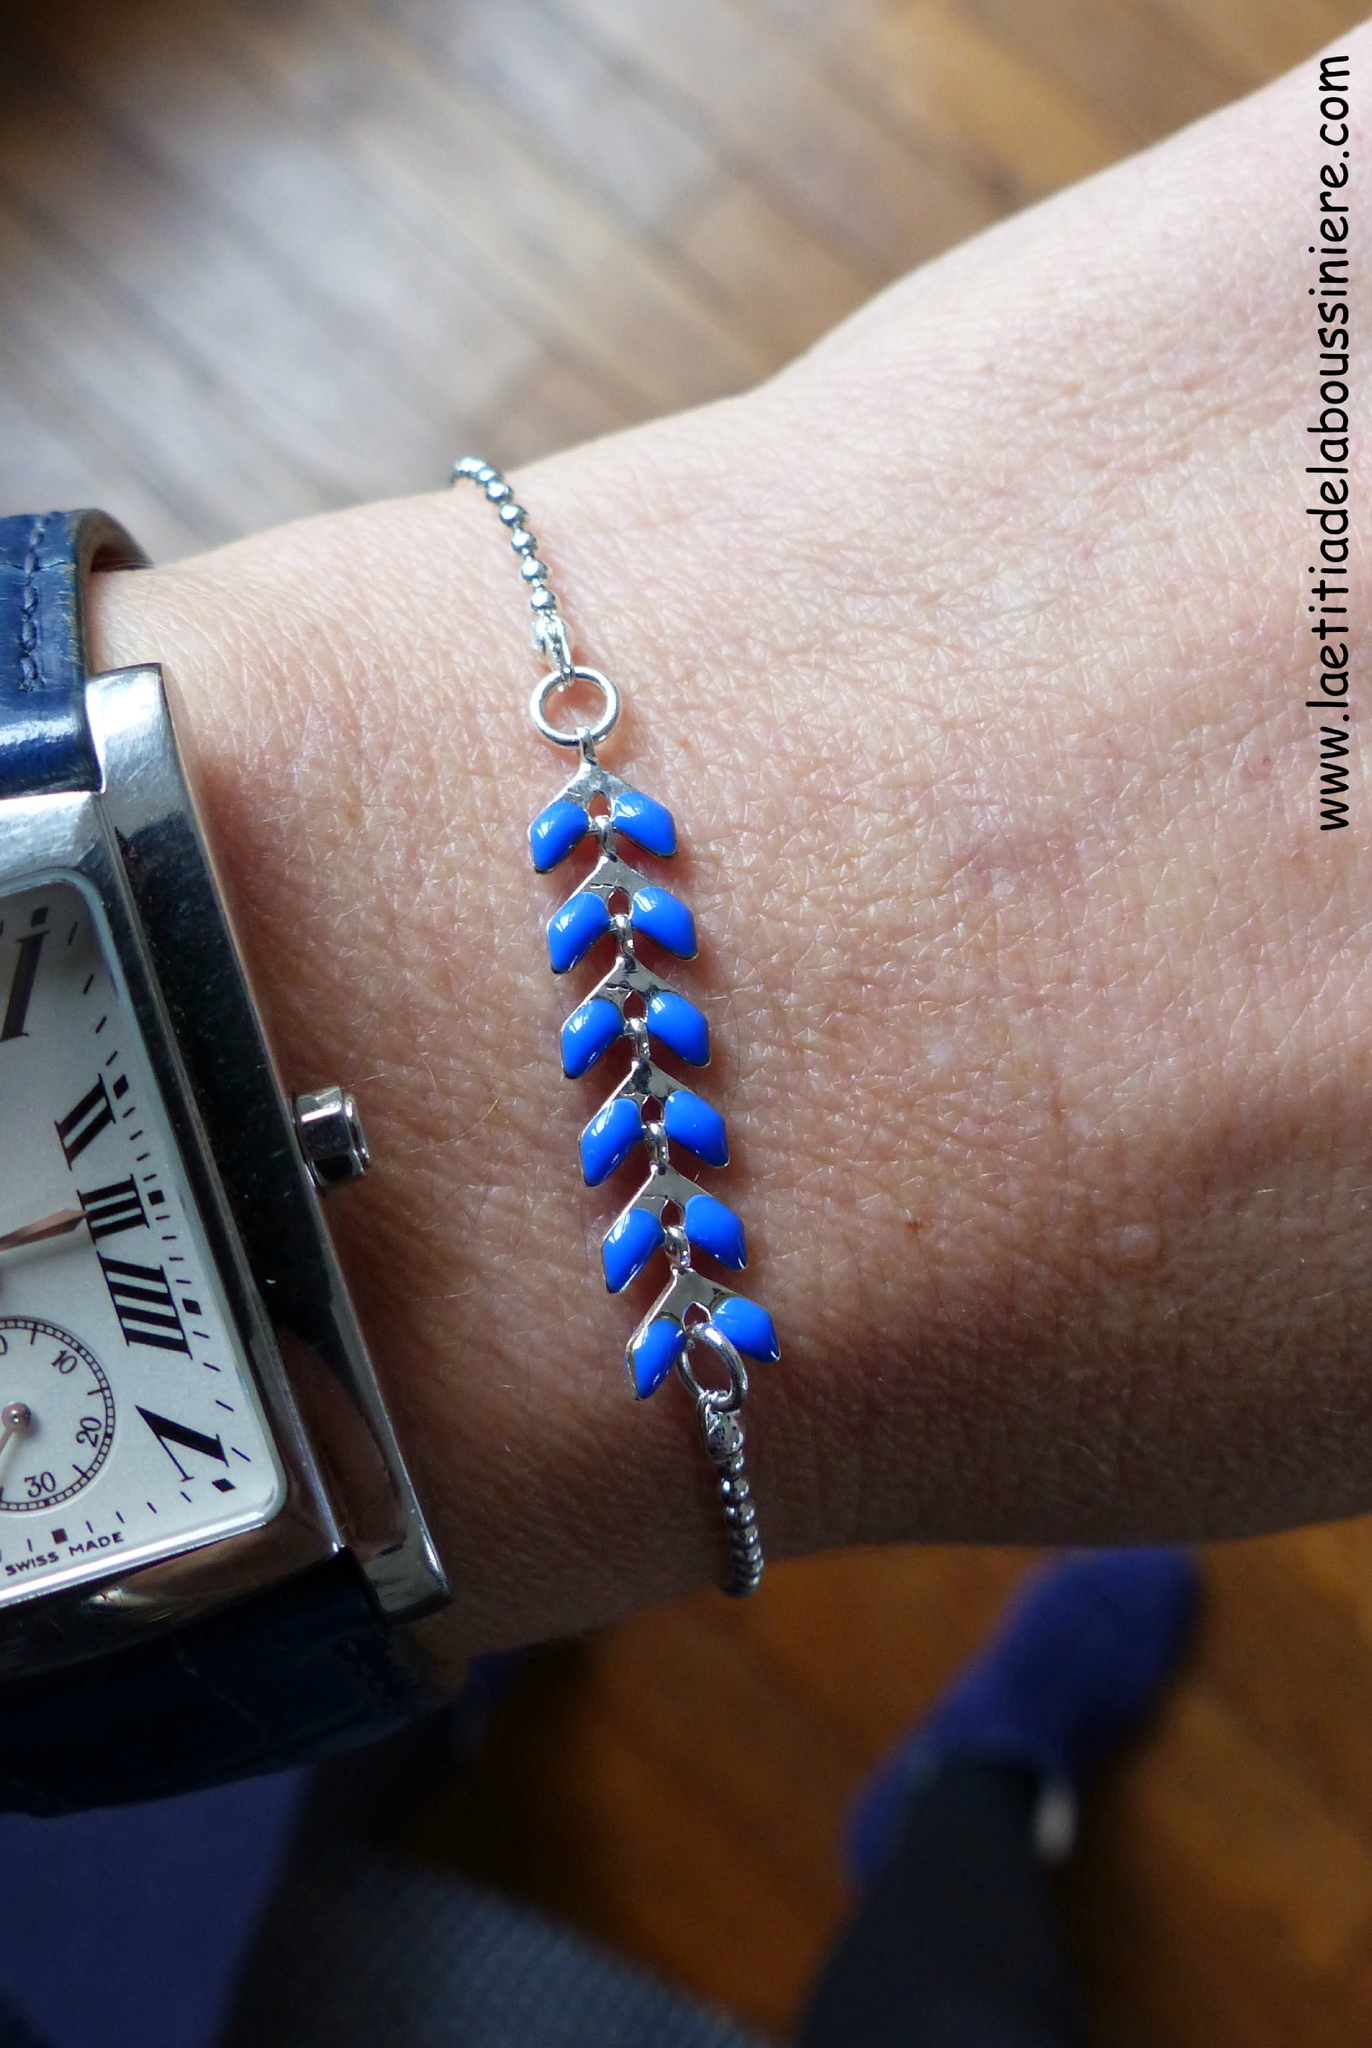 Bracelet César (bleu nuit, argenté) - 16 €